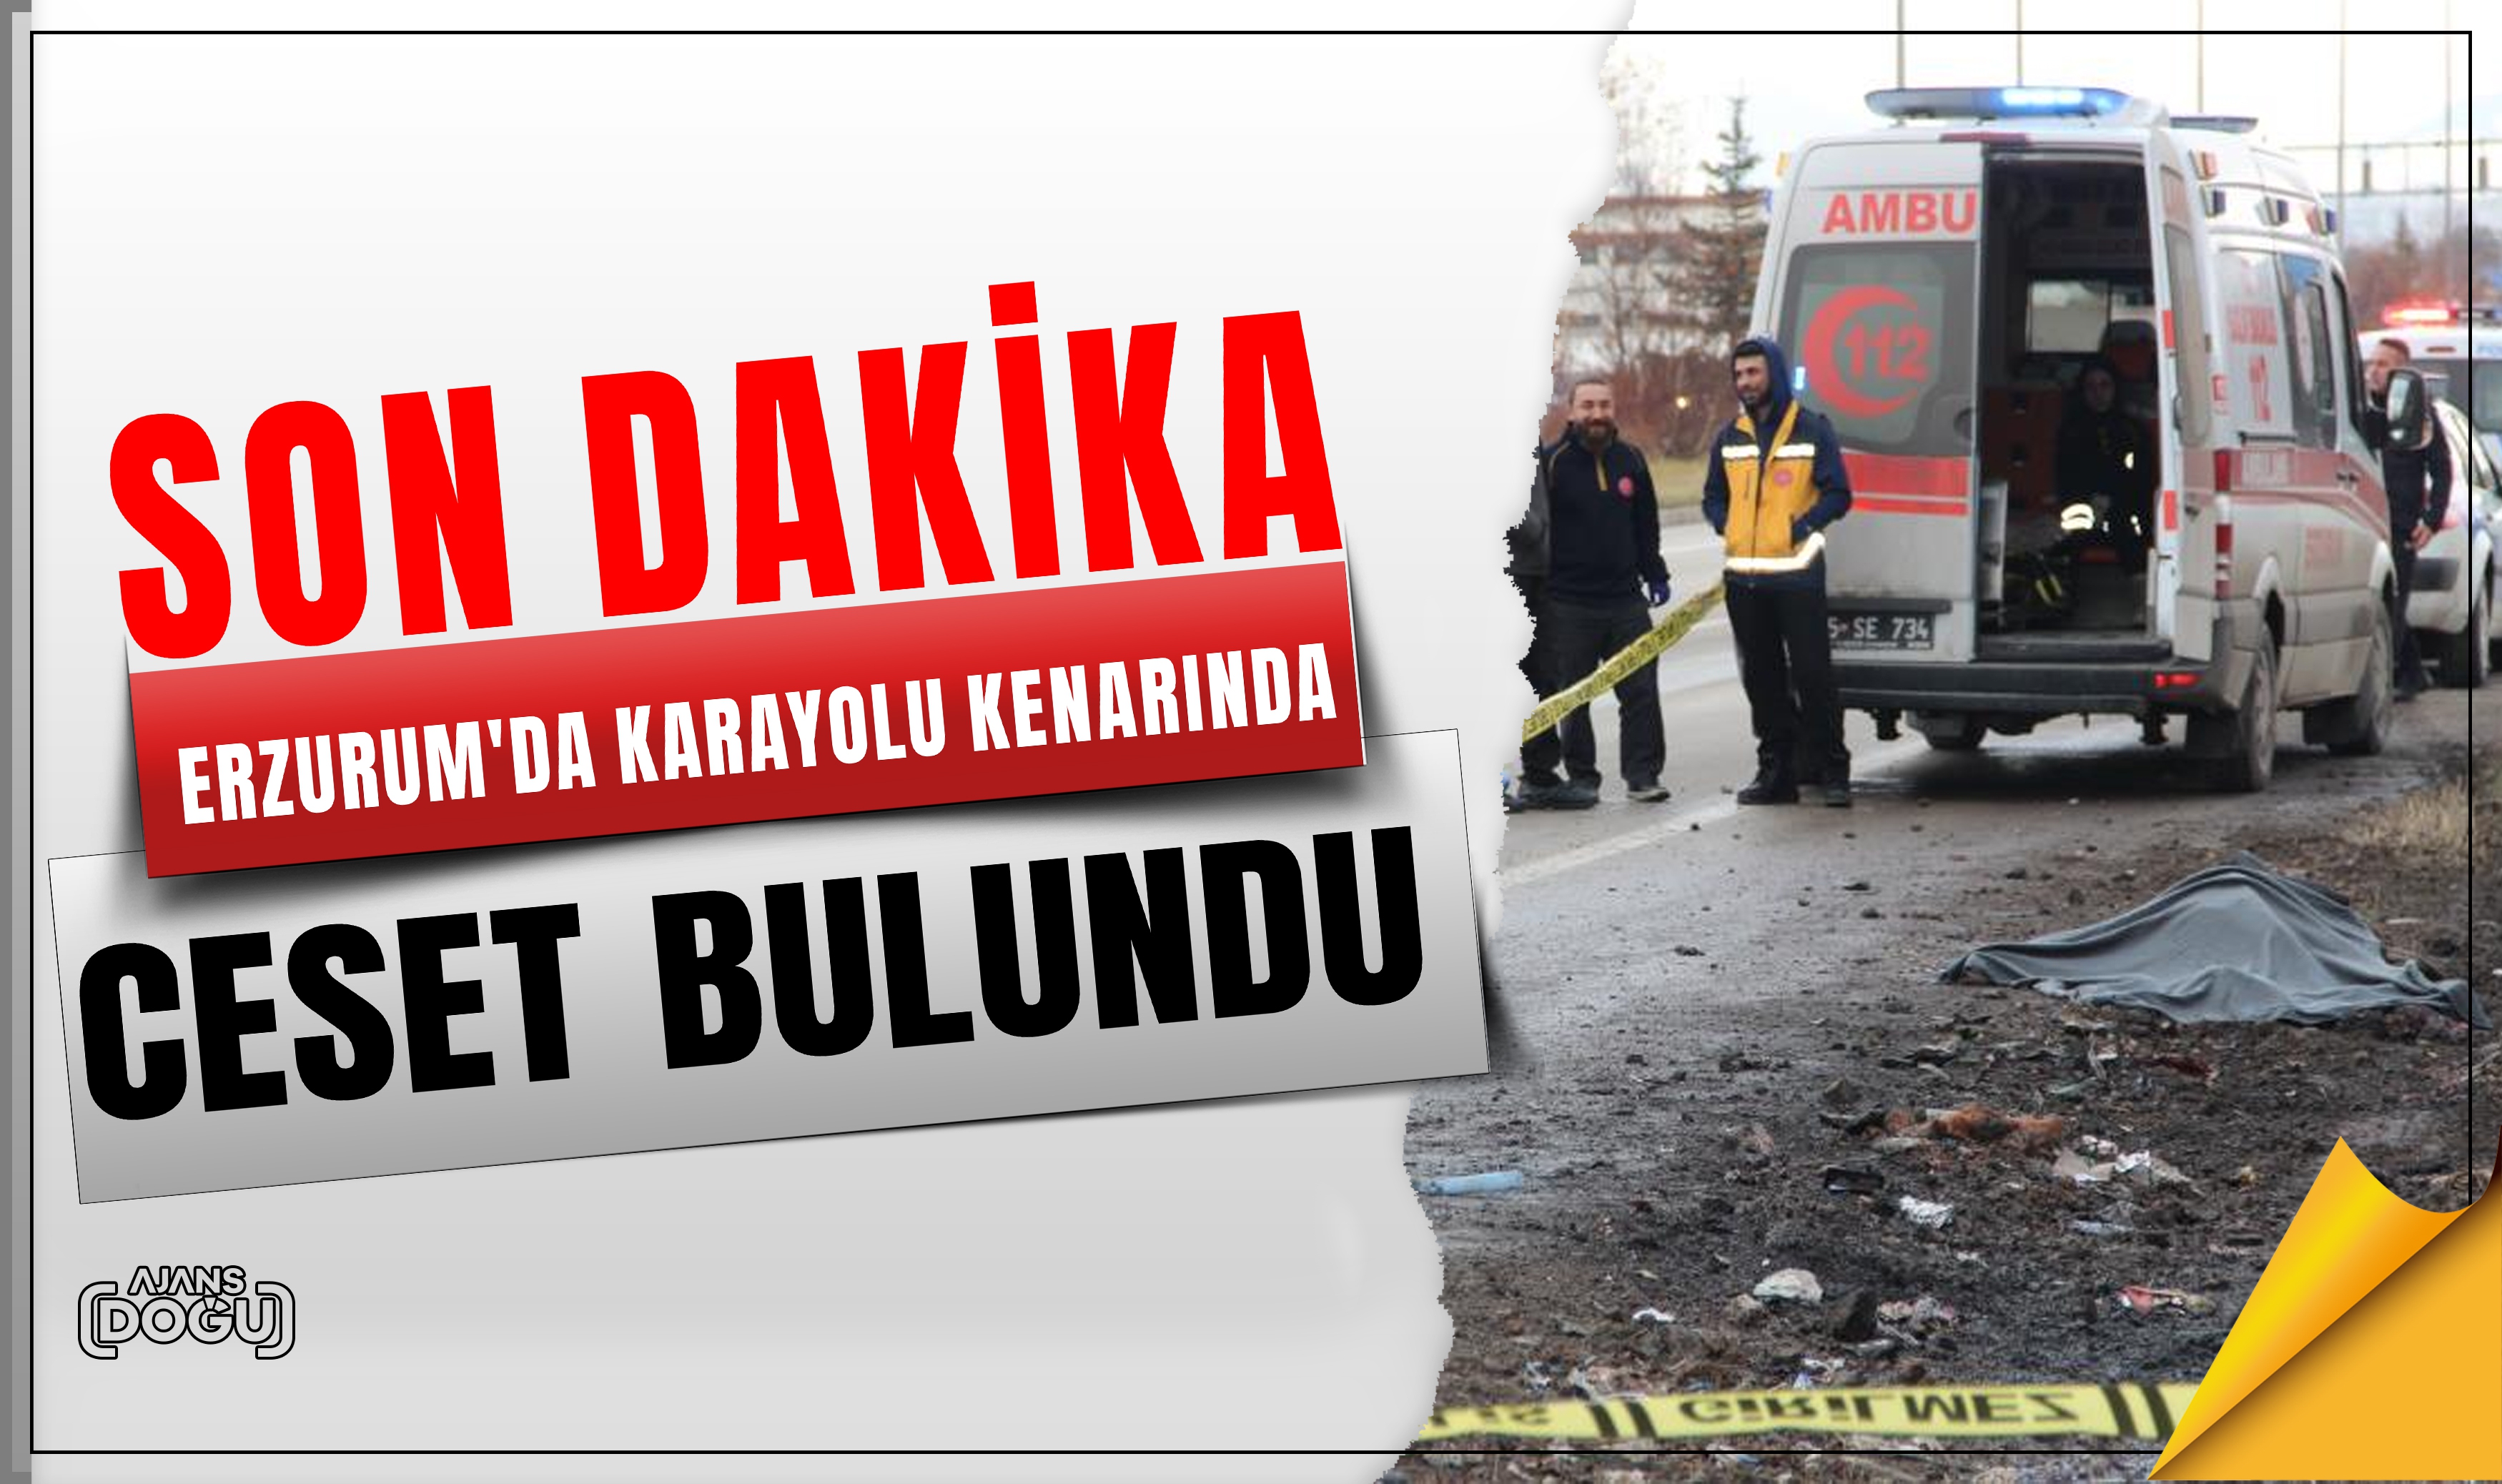 Erzurum'da karayolu kenarında ceset bulundu